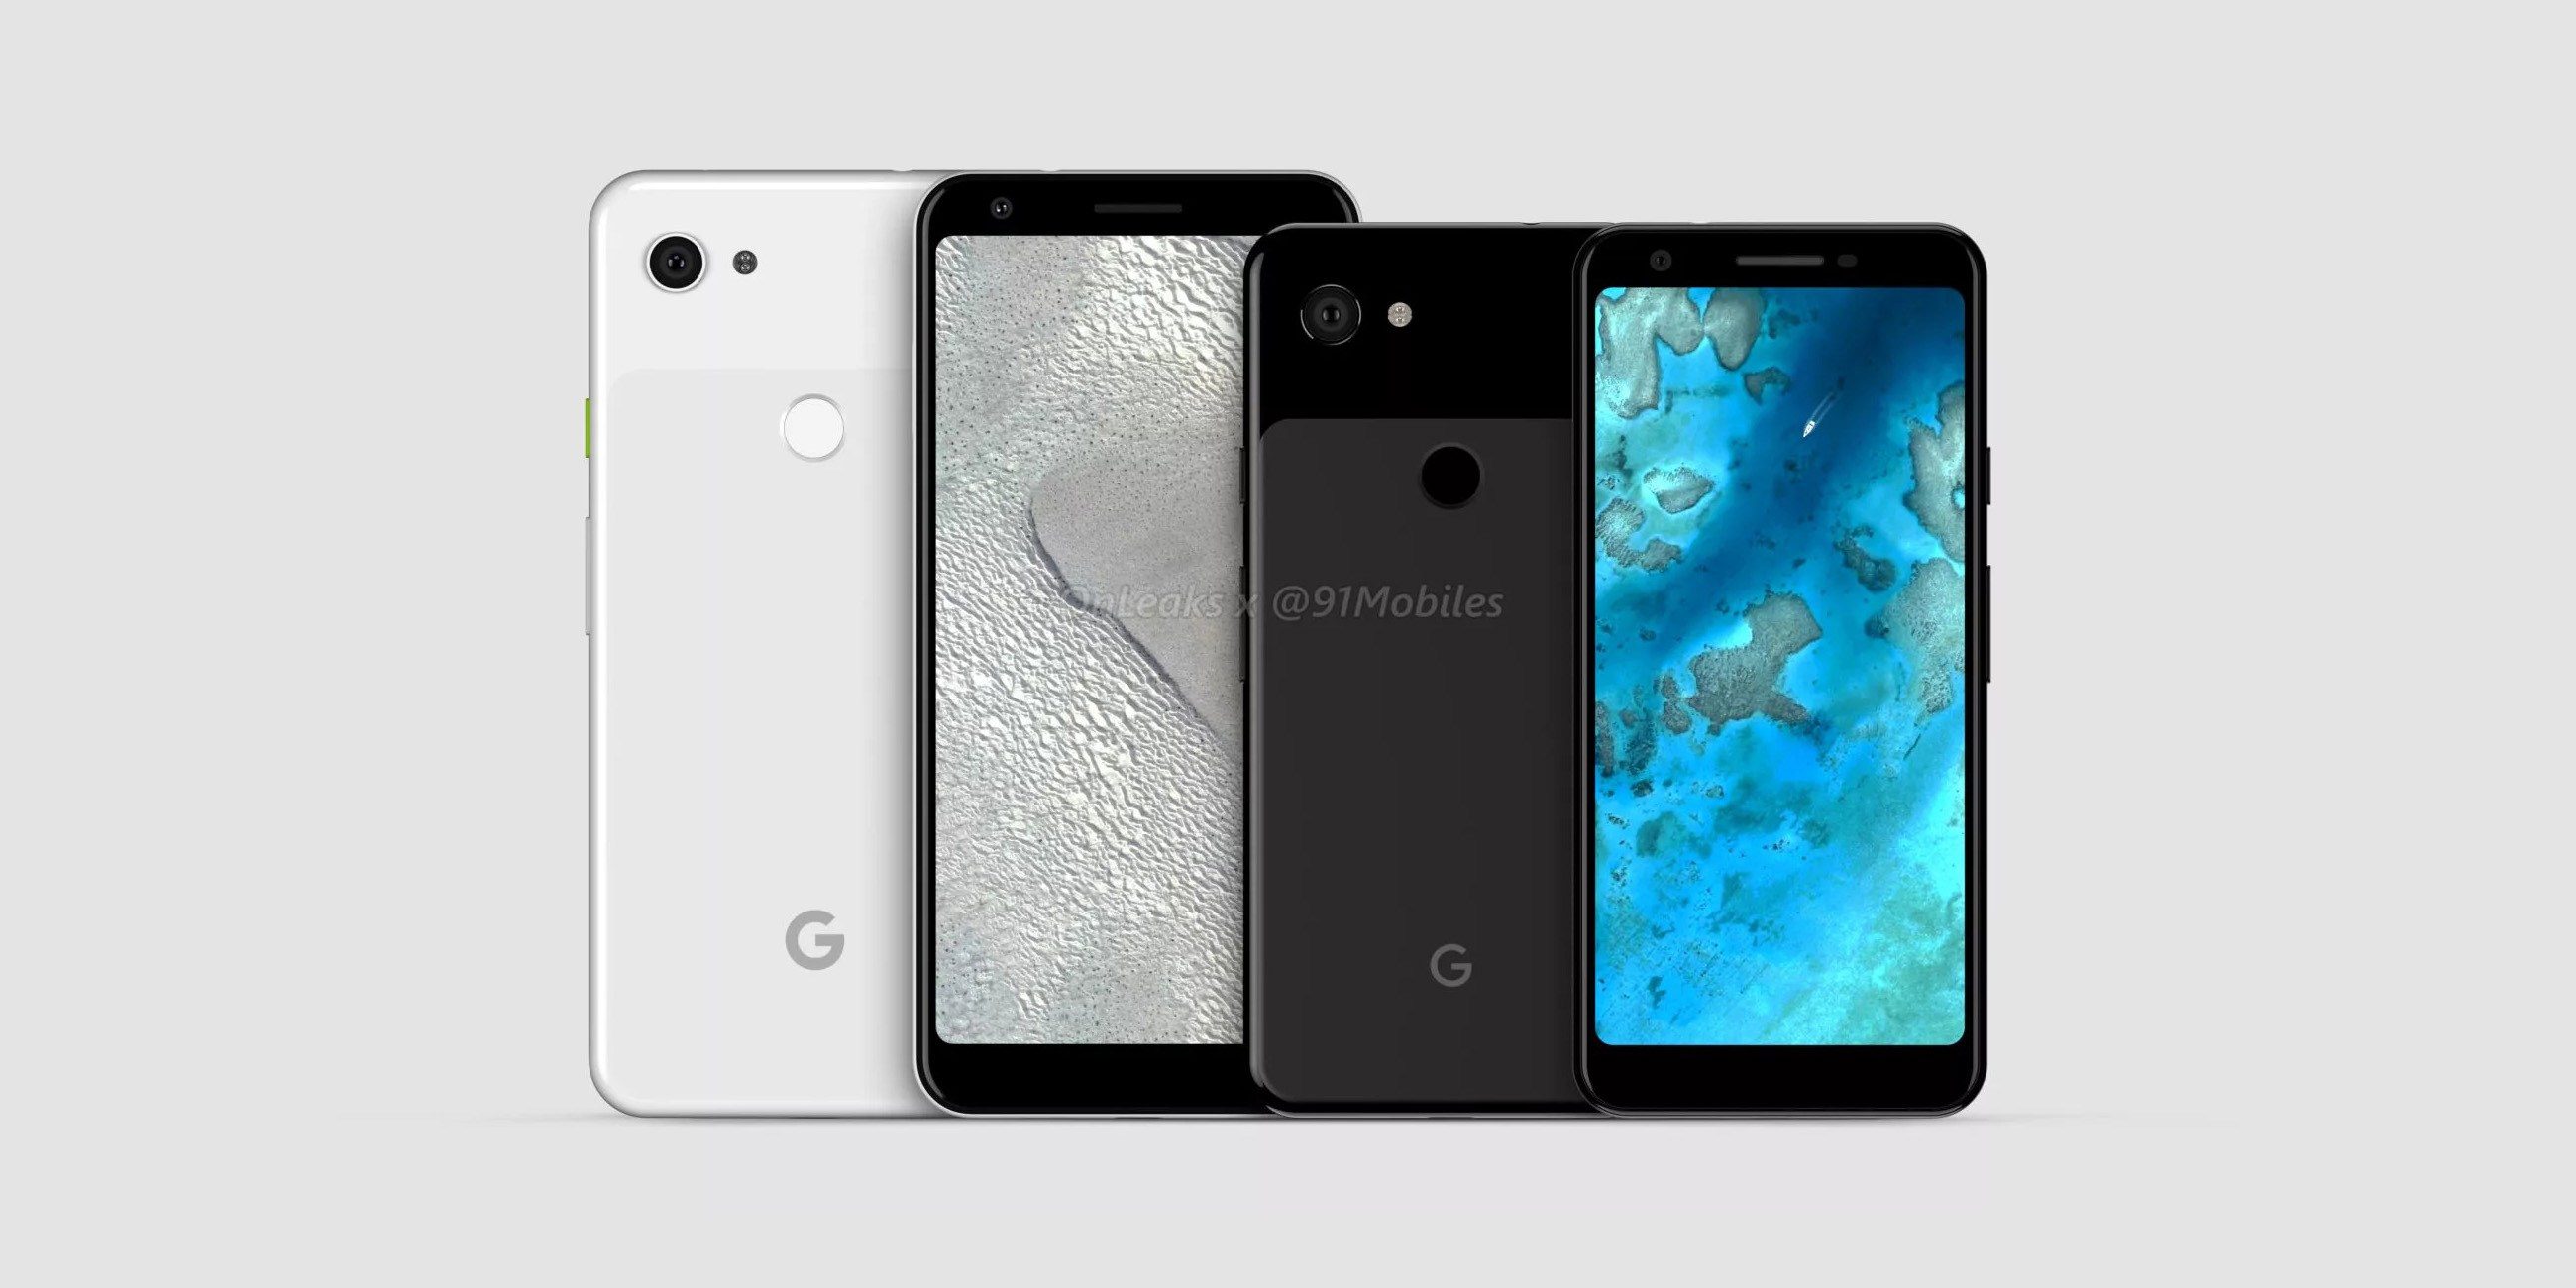 Les Google Pixel 3a / Pixel 3a XL auraient une nouvelle couleur "iris" et coûteraient environ 450€